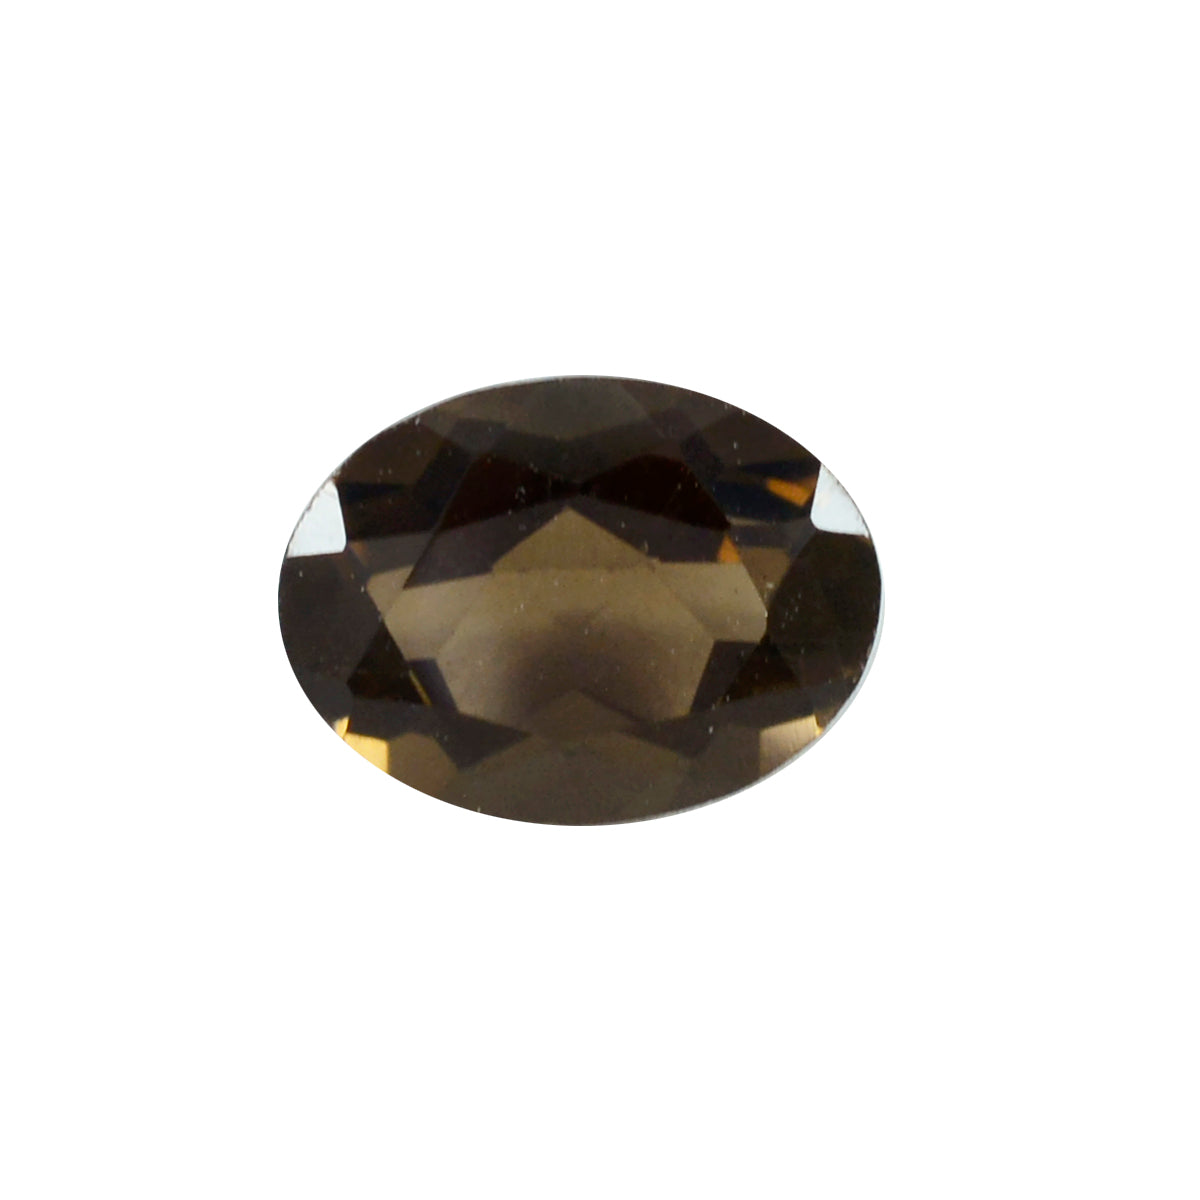 riyogems 1 шт. натуральный коричневый дымчатый кварц ограненный 9x11 мм овальной формы отличное качество свободный камень